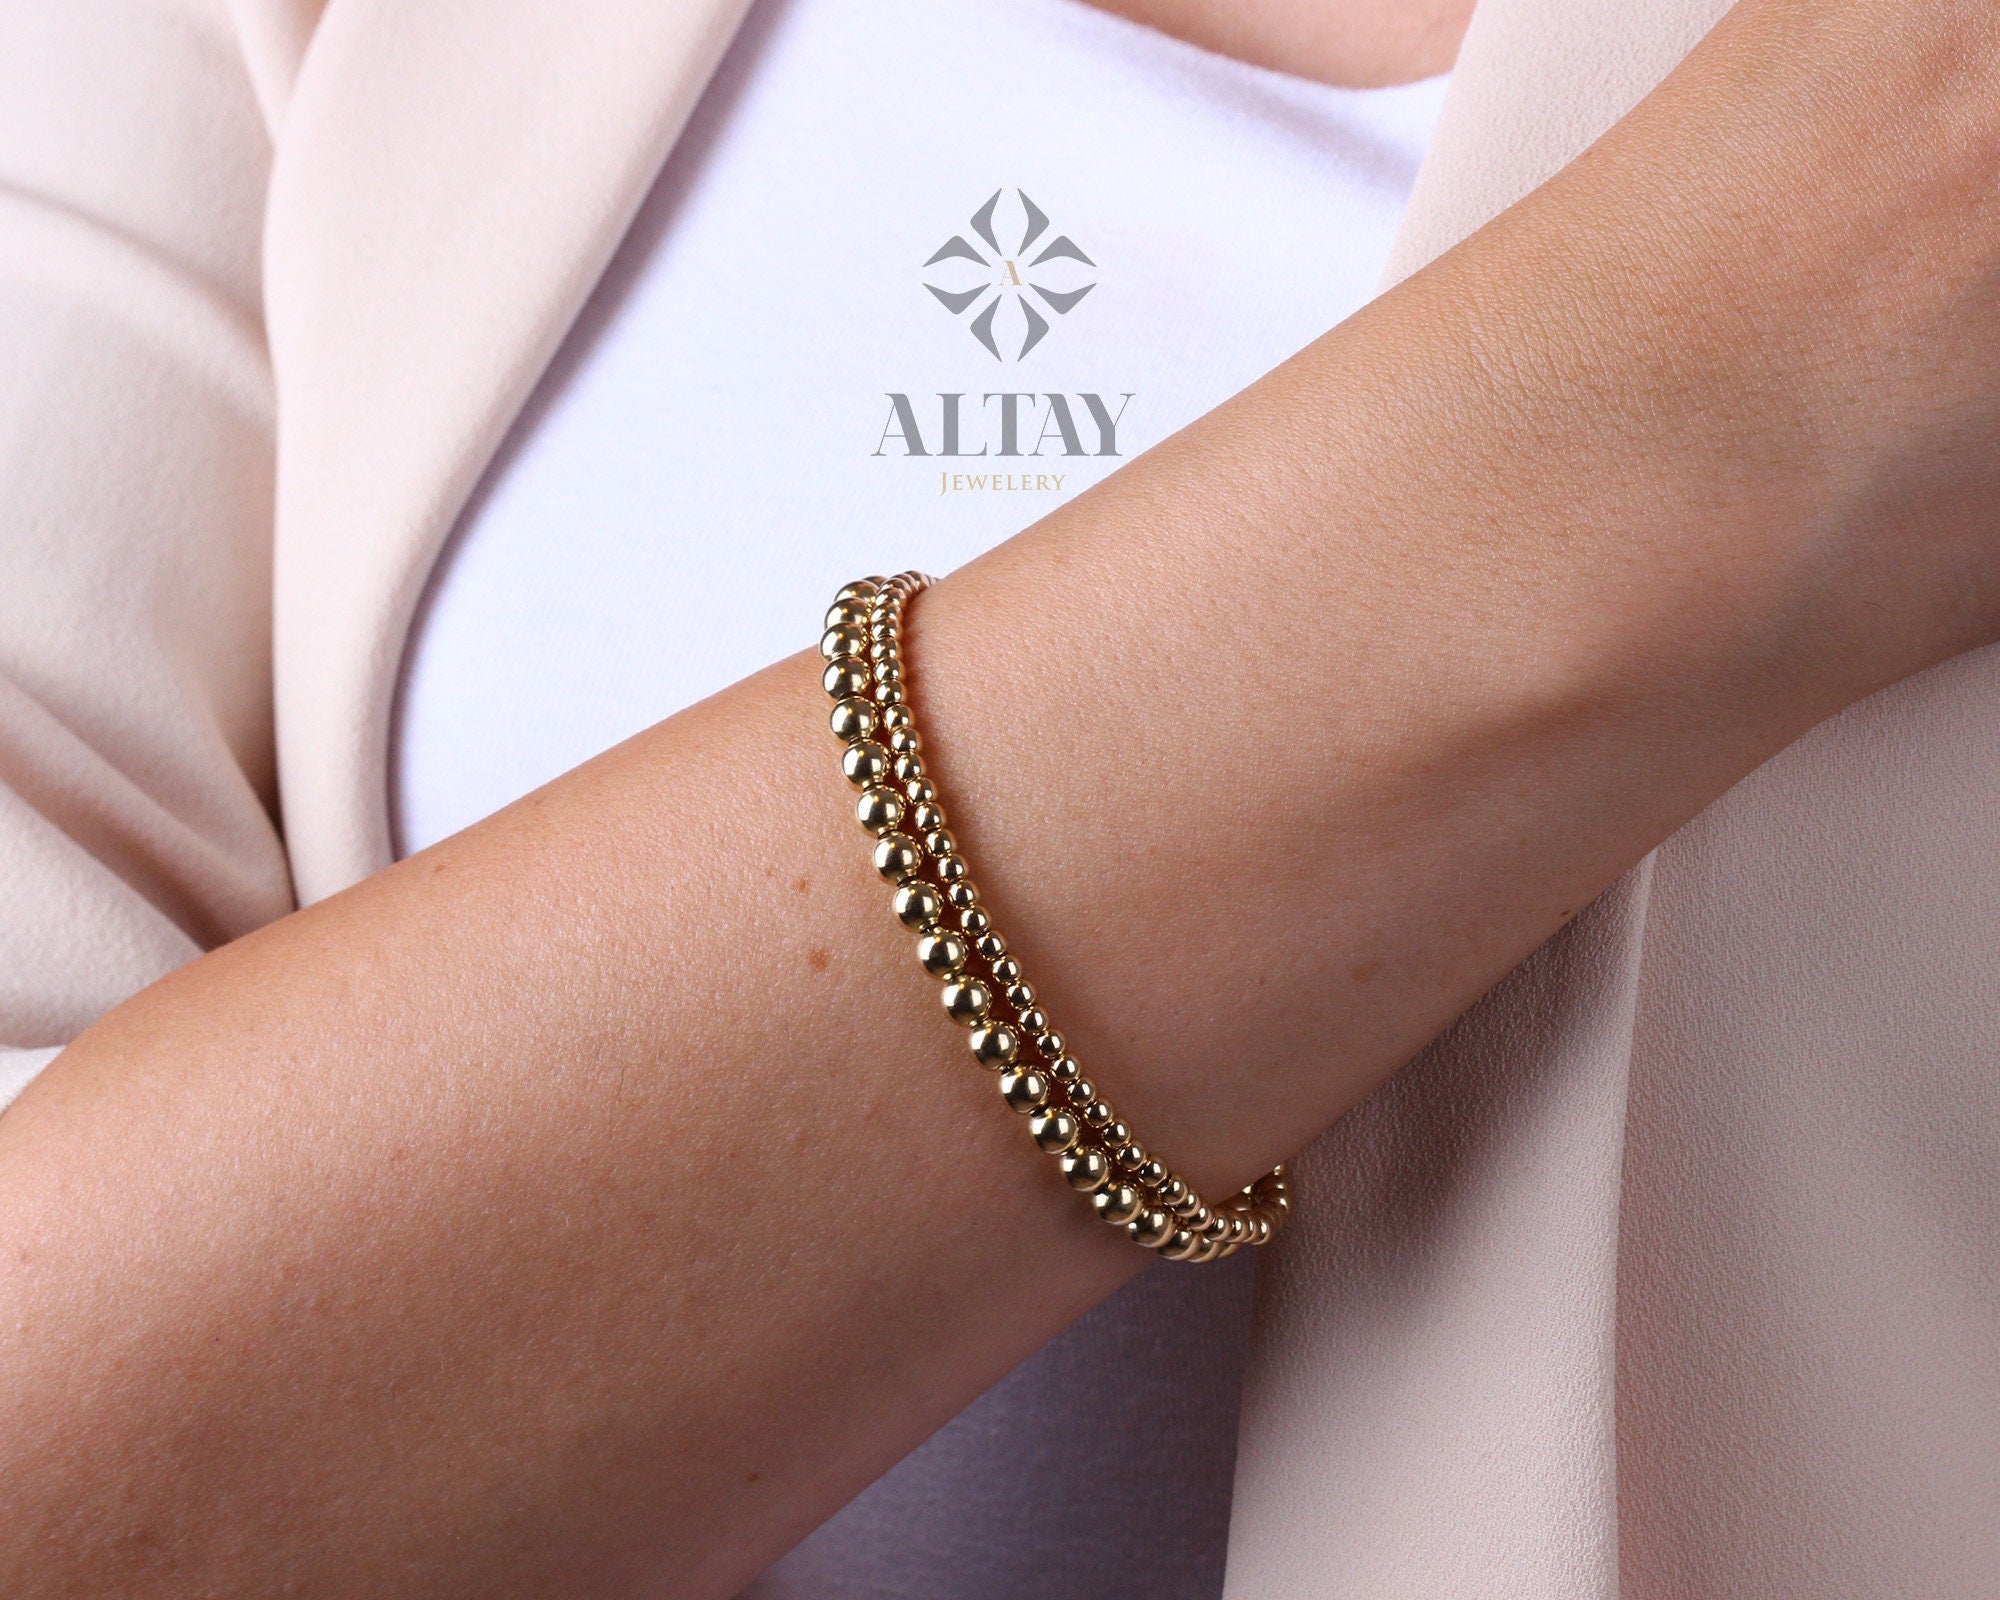 14K Gold Beaded Chain Bracelet, 3mm 5mm Mini Balls Bracelet, Multiballs Chain, Bead Minimalist Fashion Bracelet, Delicate, Gift For Her